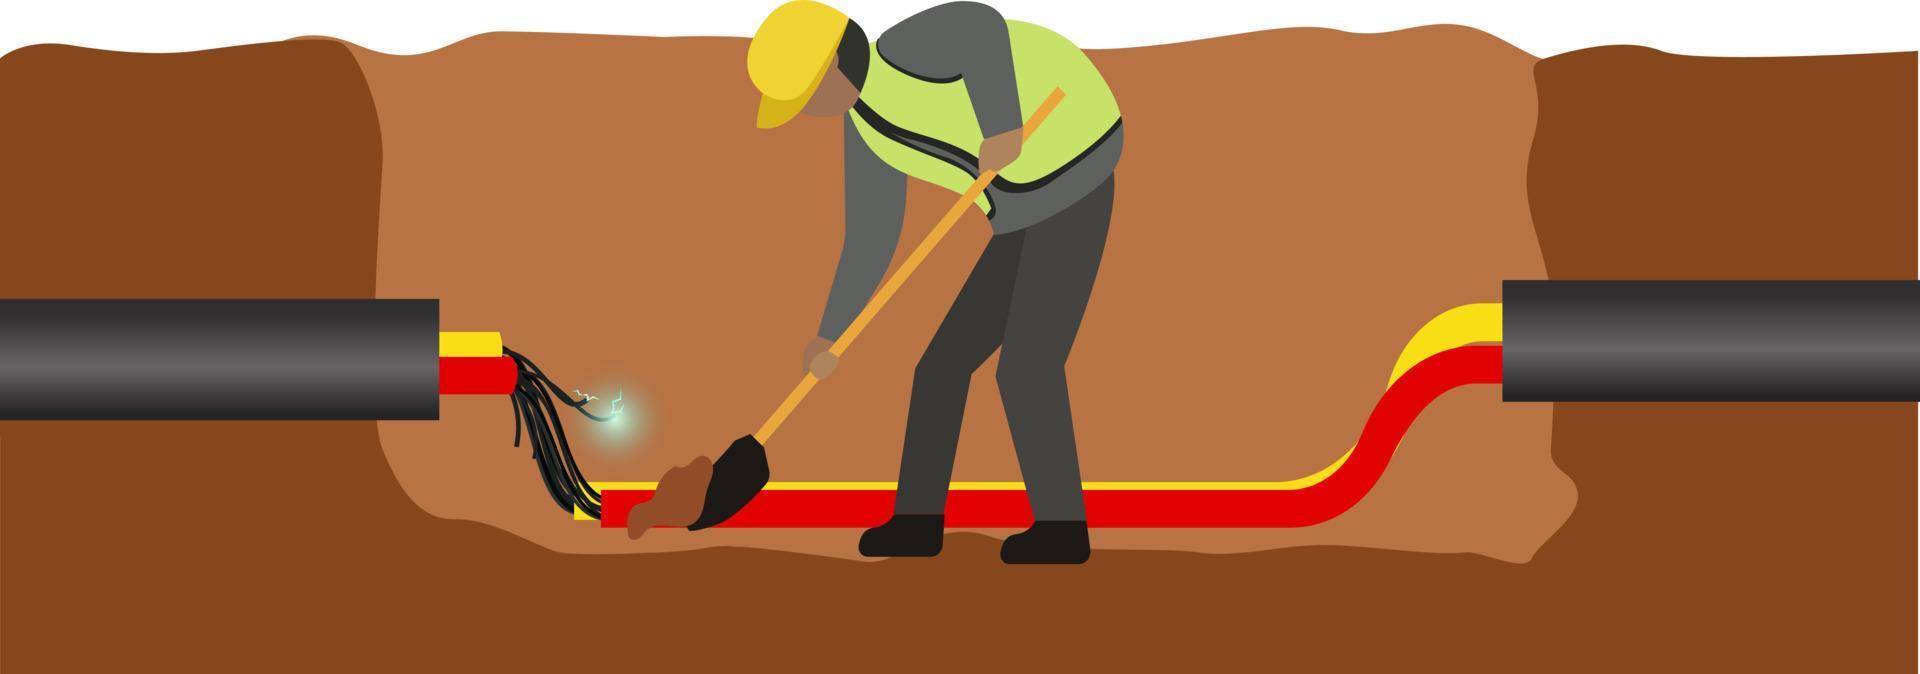 costruzione lavoratore, riparazione rotto filo tubo su calcestruzzo suolo vettore